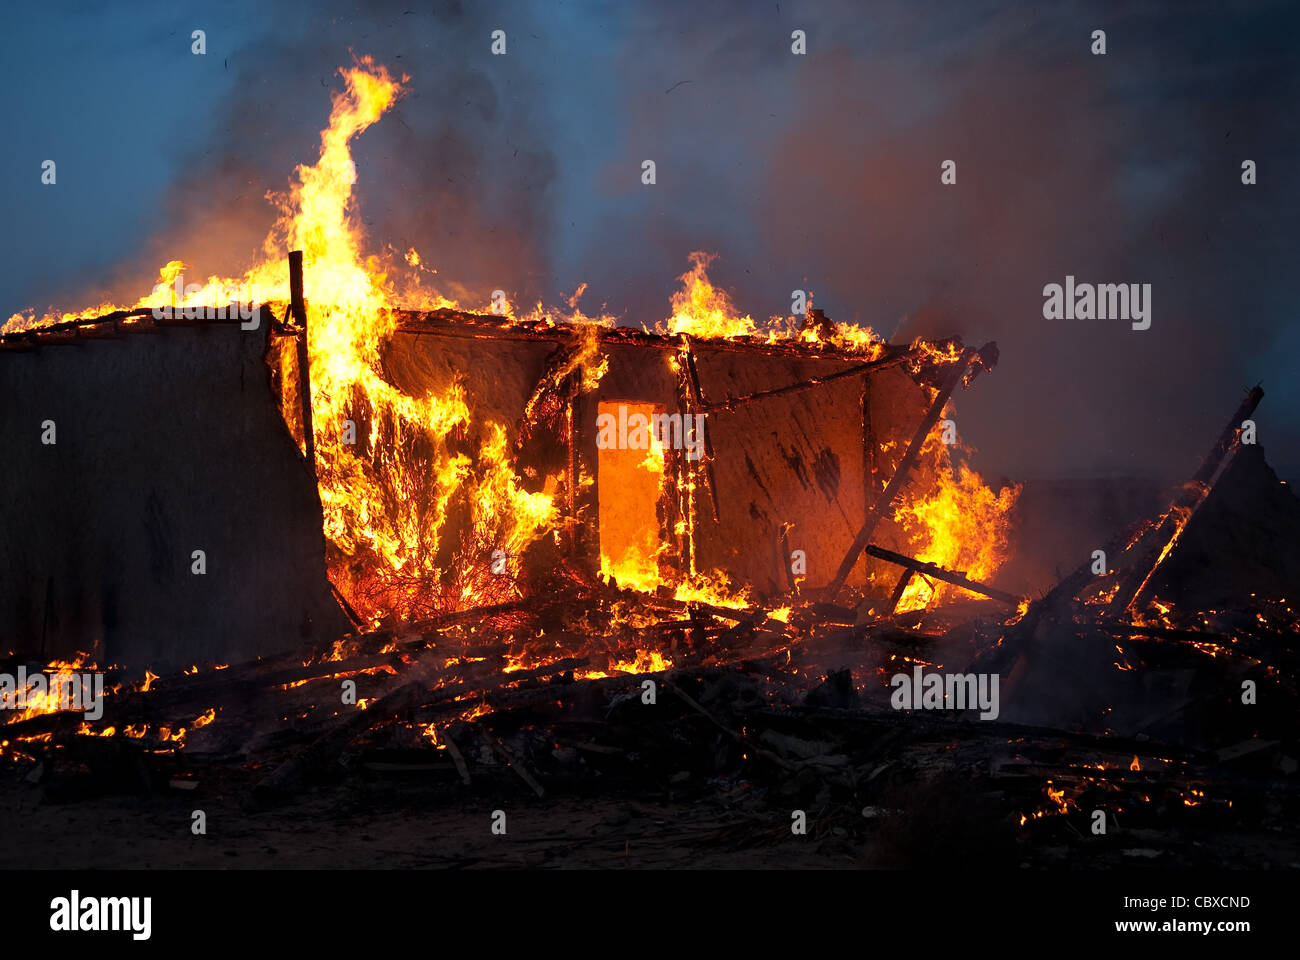 Burning old abandoned house at dusk Stock Photo